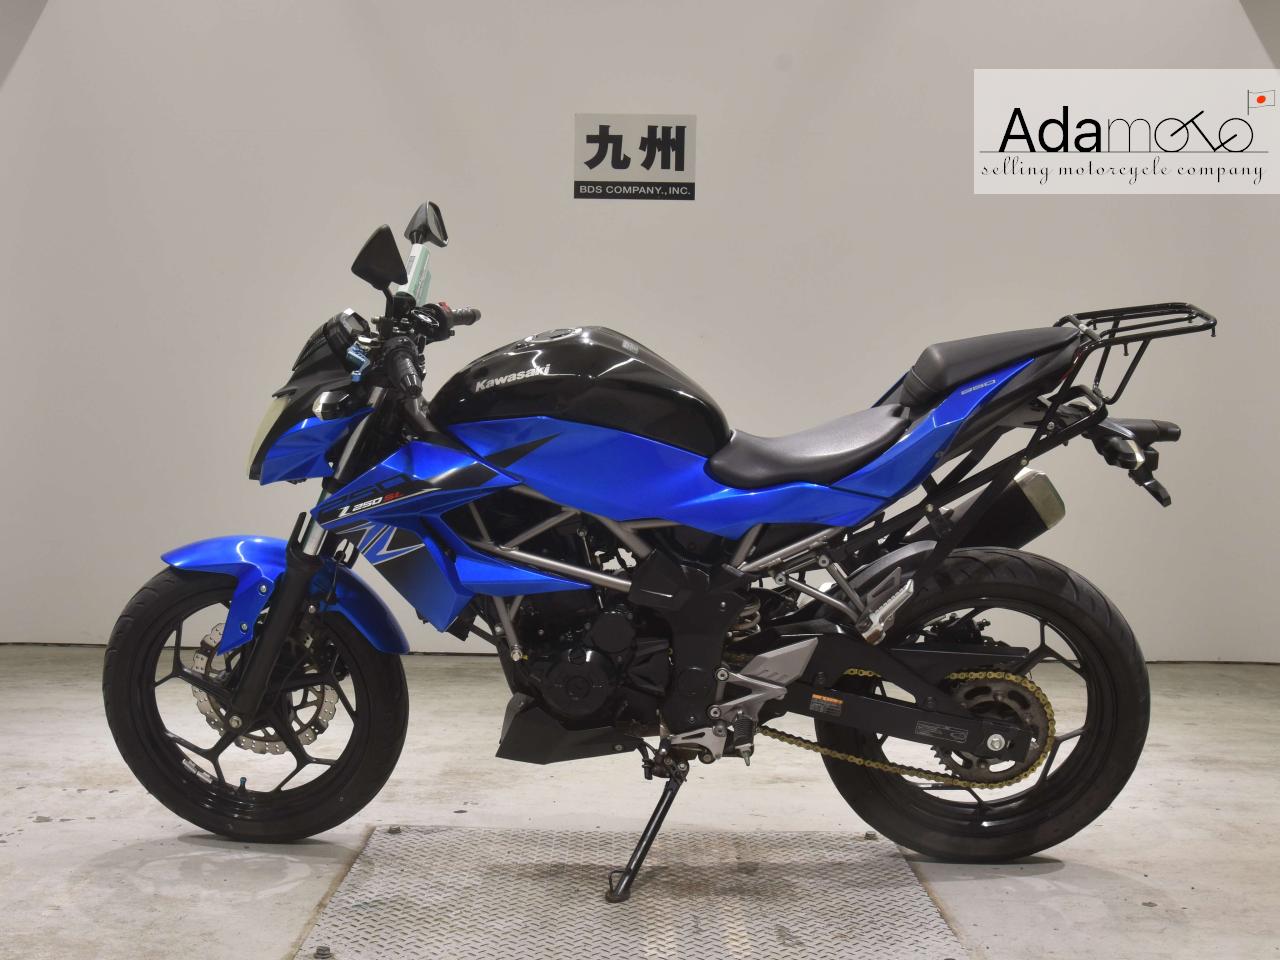 Kawasaki Z250SL - Adamoto - Motorcycles from Japan